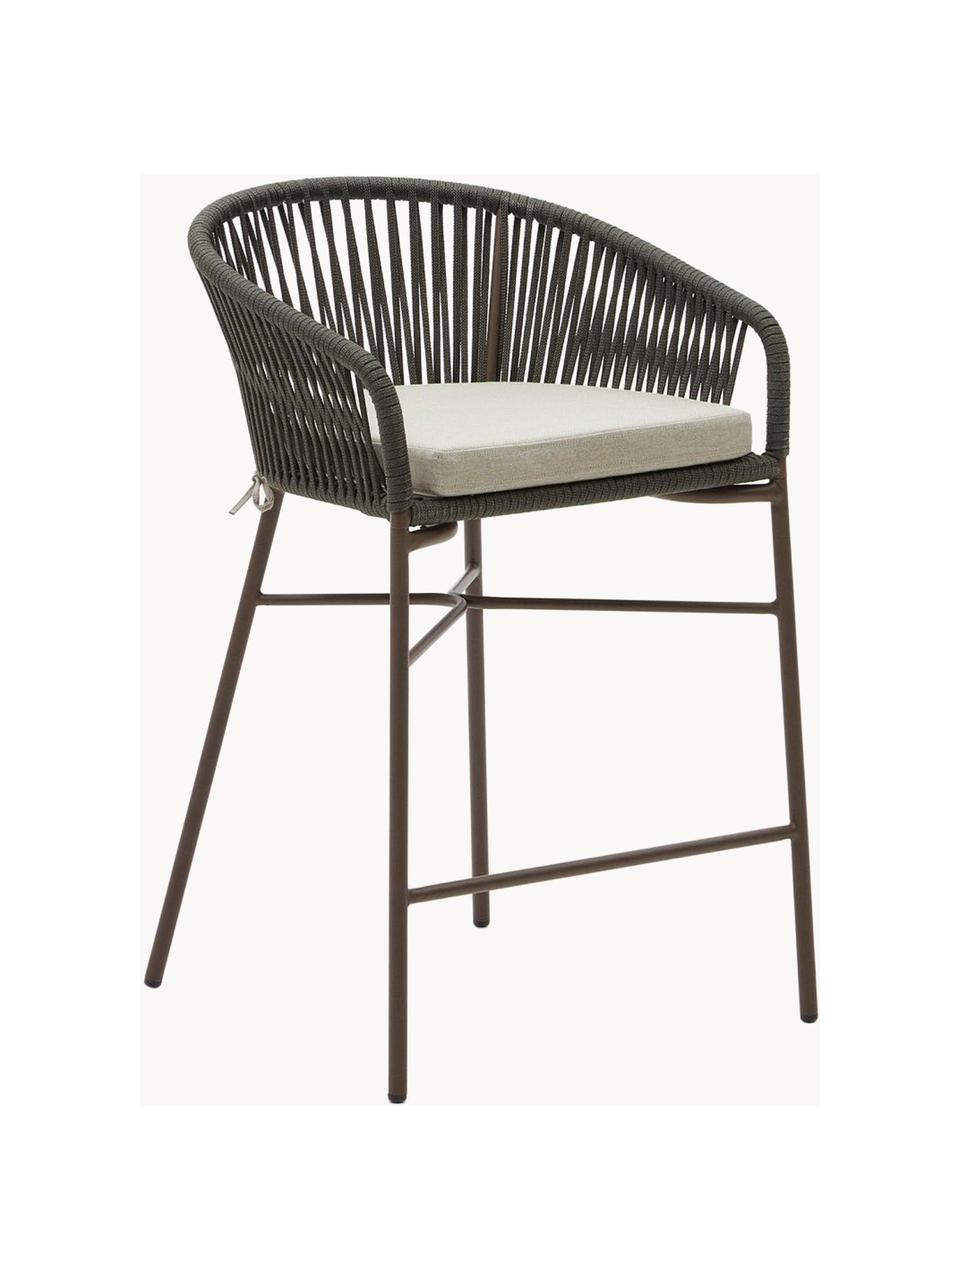 Ogrodowe krzesło barowe Yanet, 2 szt., Tapicerka: 100% poliester, Stelaż: metal ocynkowany, Jasnobeżowa tkanina, oliwkowy zielony, S 55 x W 85 cm